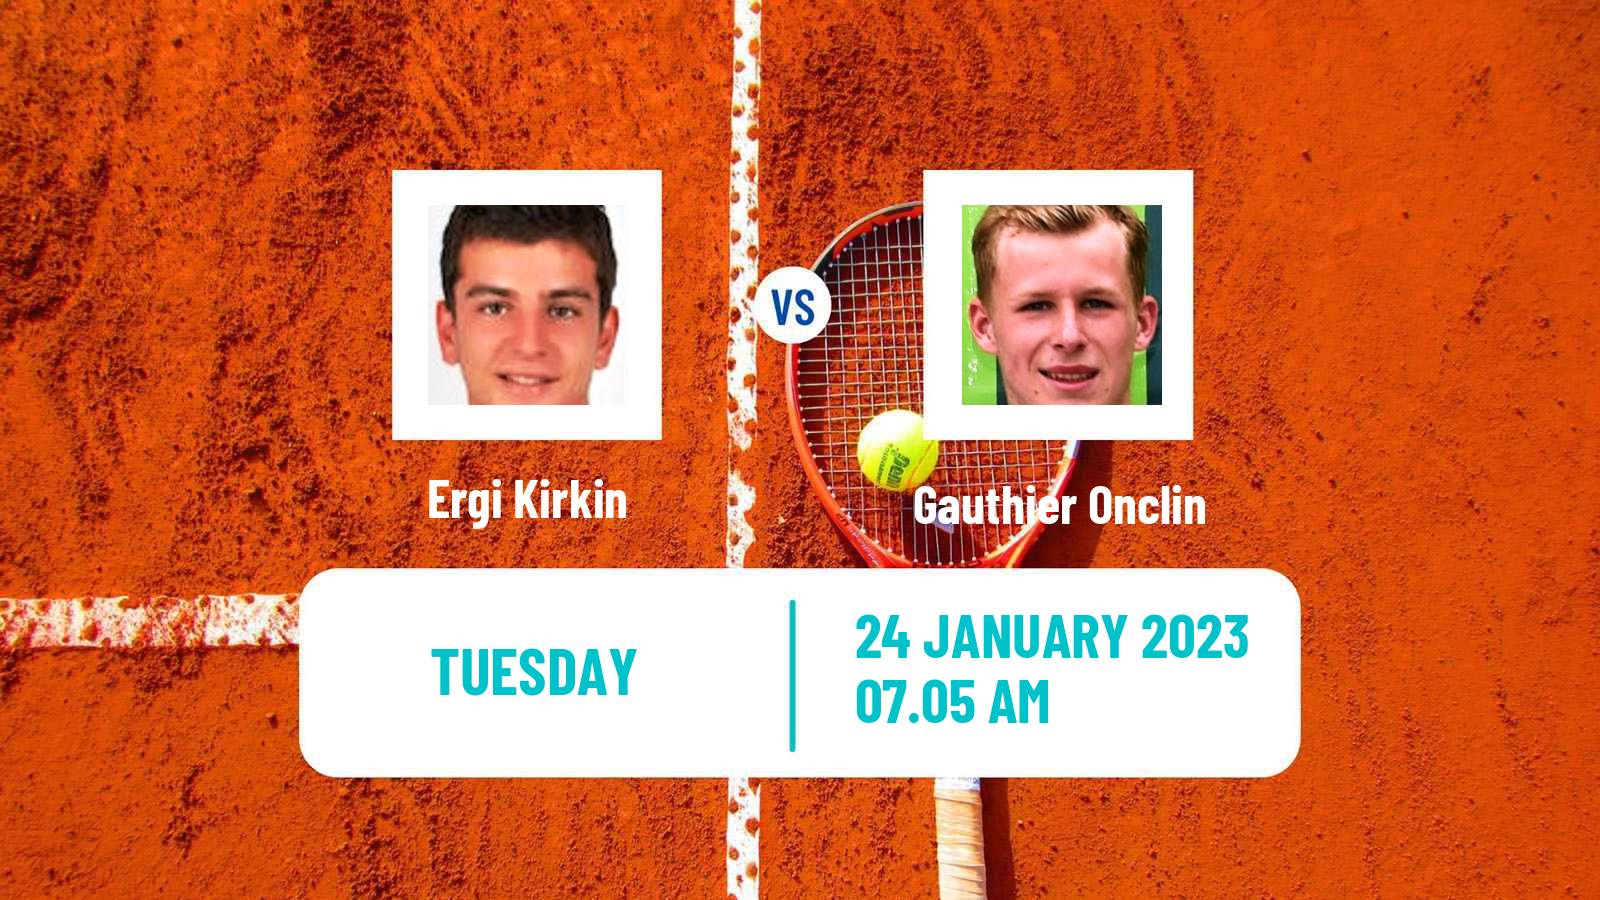 Tennis ATP Challenger Ergi Kirkin - Gauthier Onclin